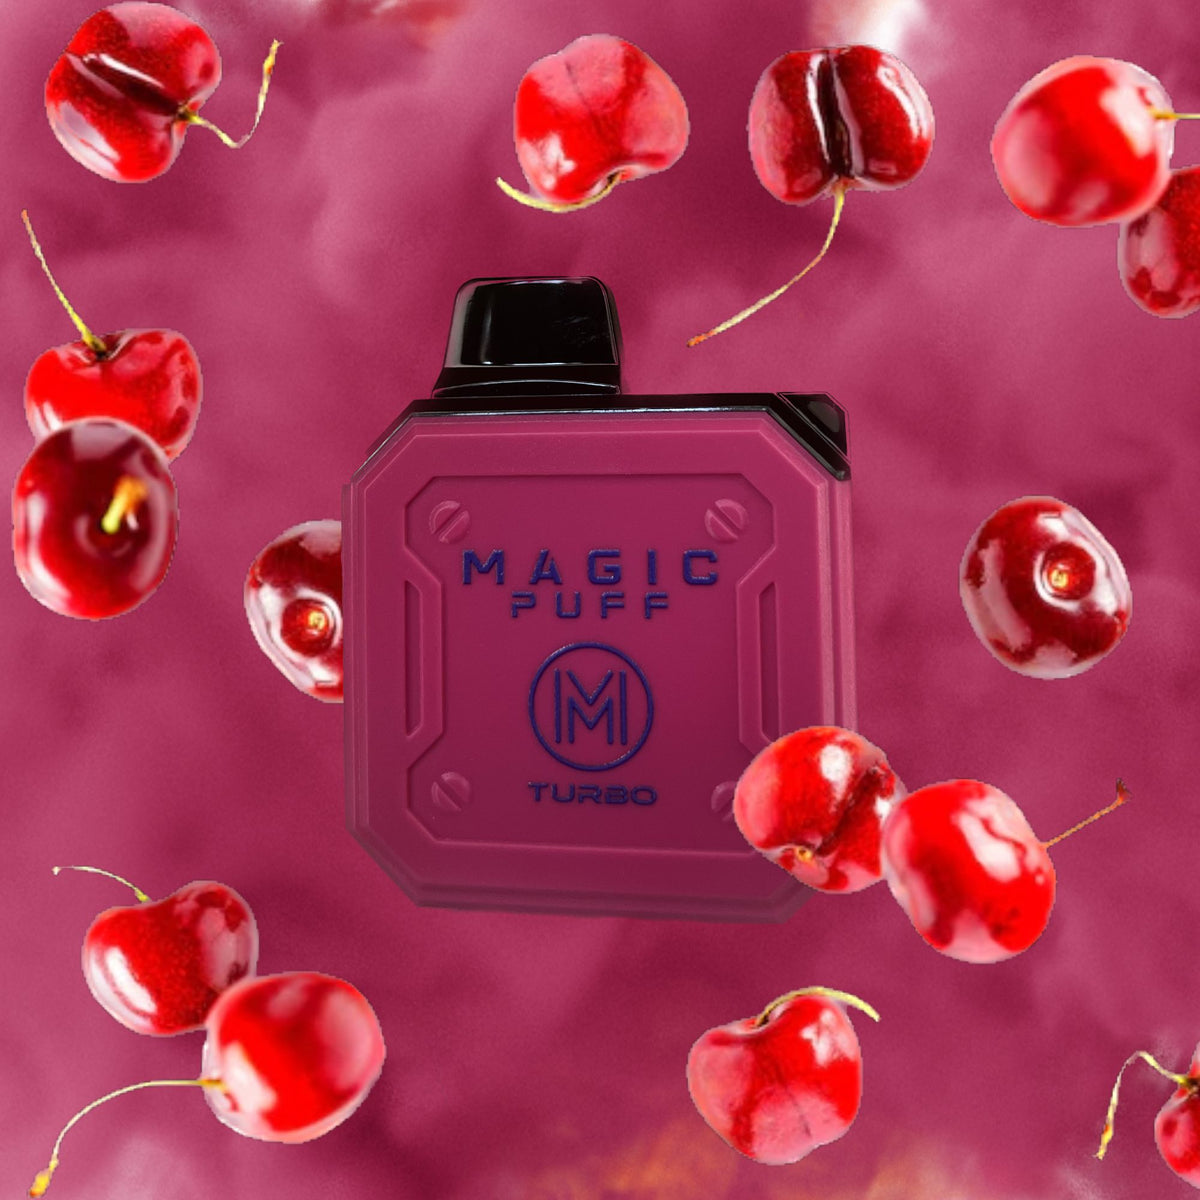 Magic Puff Turbo Vape Cherry Cherry : Erfrischendes Dampferlebnis